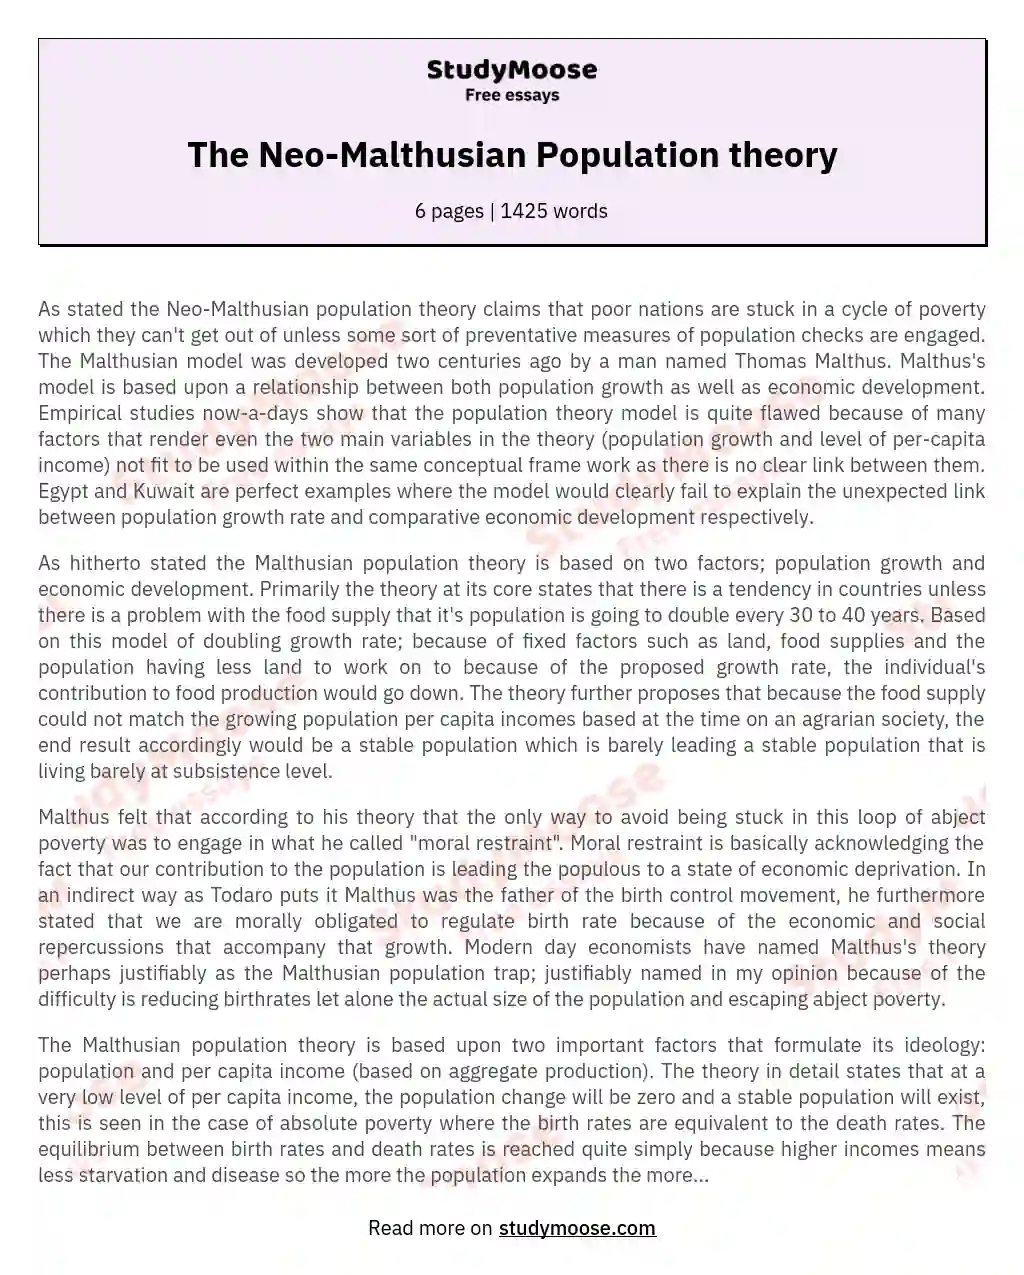 The Neo-Malthusian Population theory essay